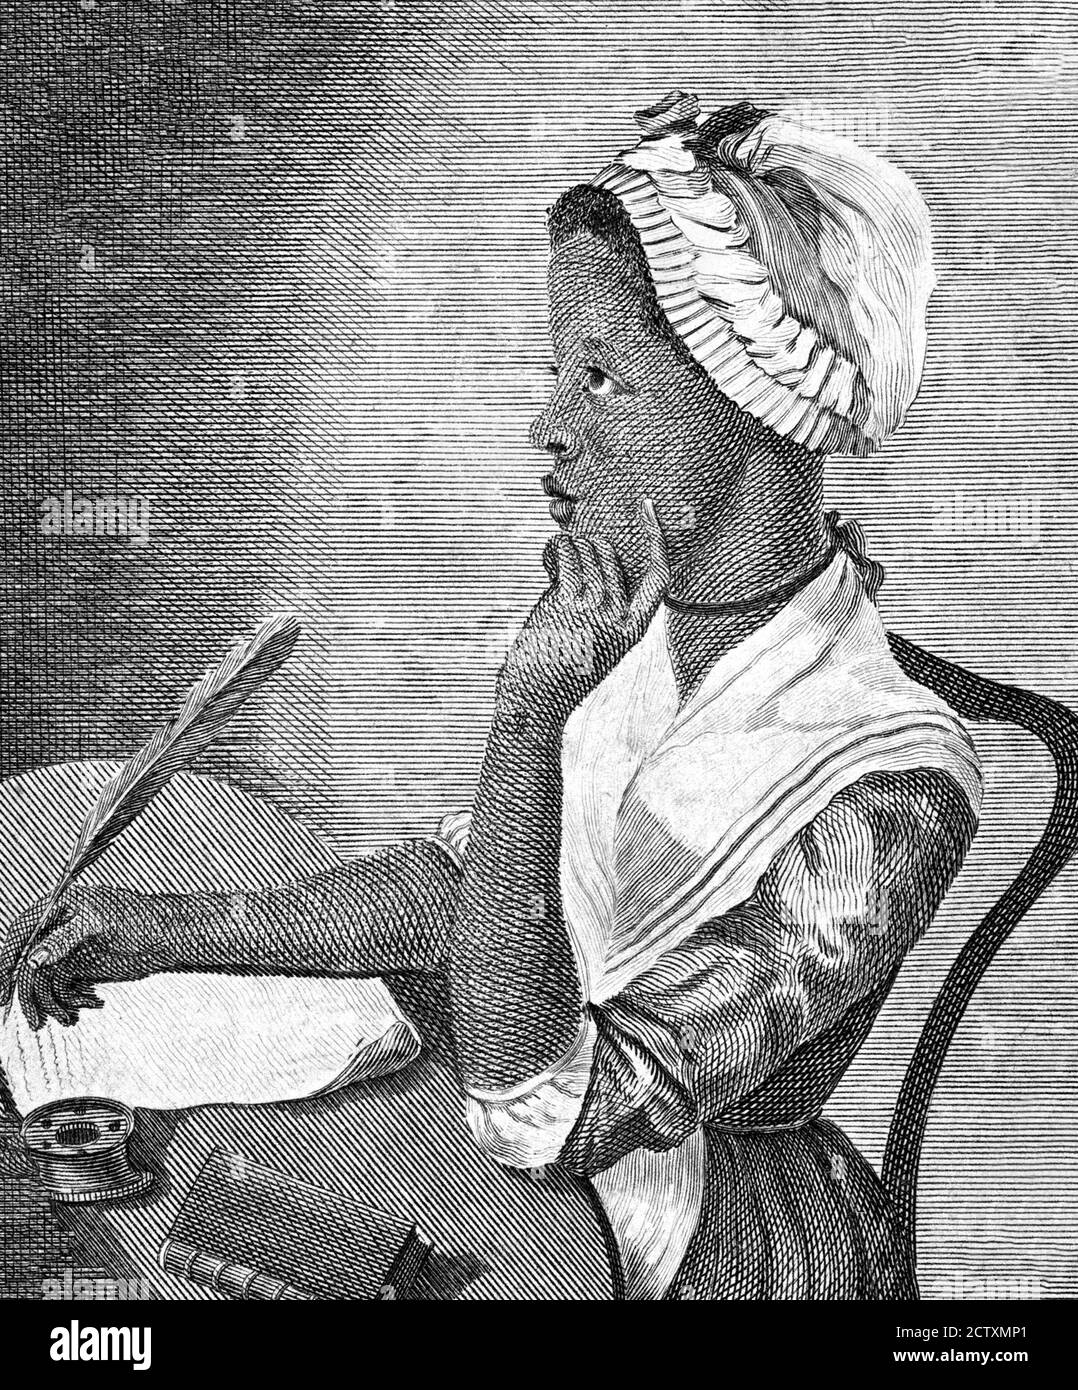 Philis Wheatley (c.1753-1784), retrato del primer autor afroamericano de un libro publicado de poesía, grabado, c.1773 Foto de stock